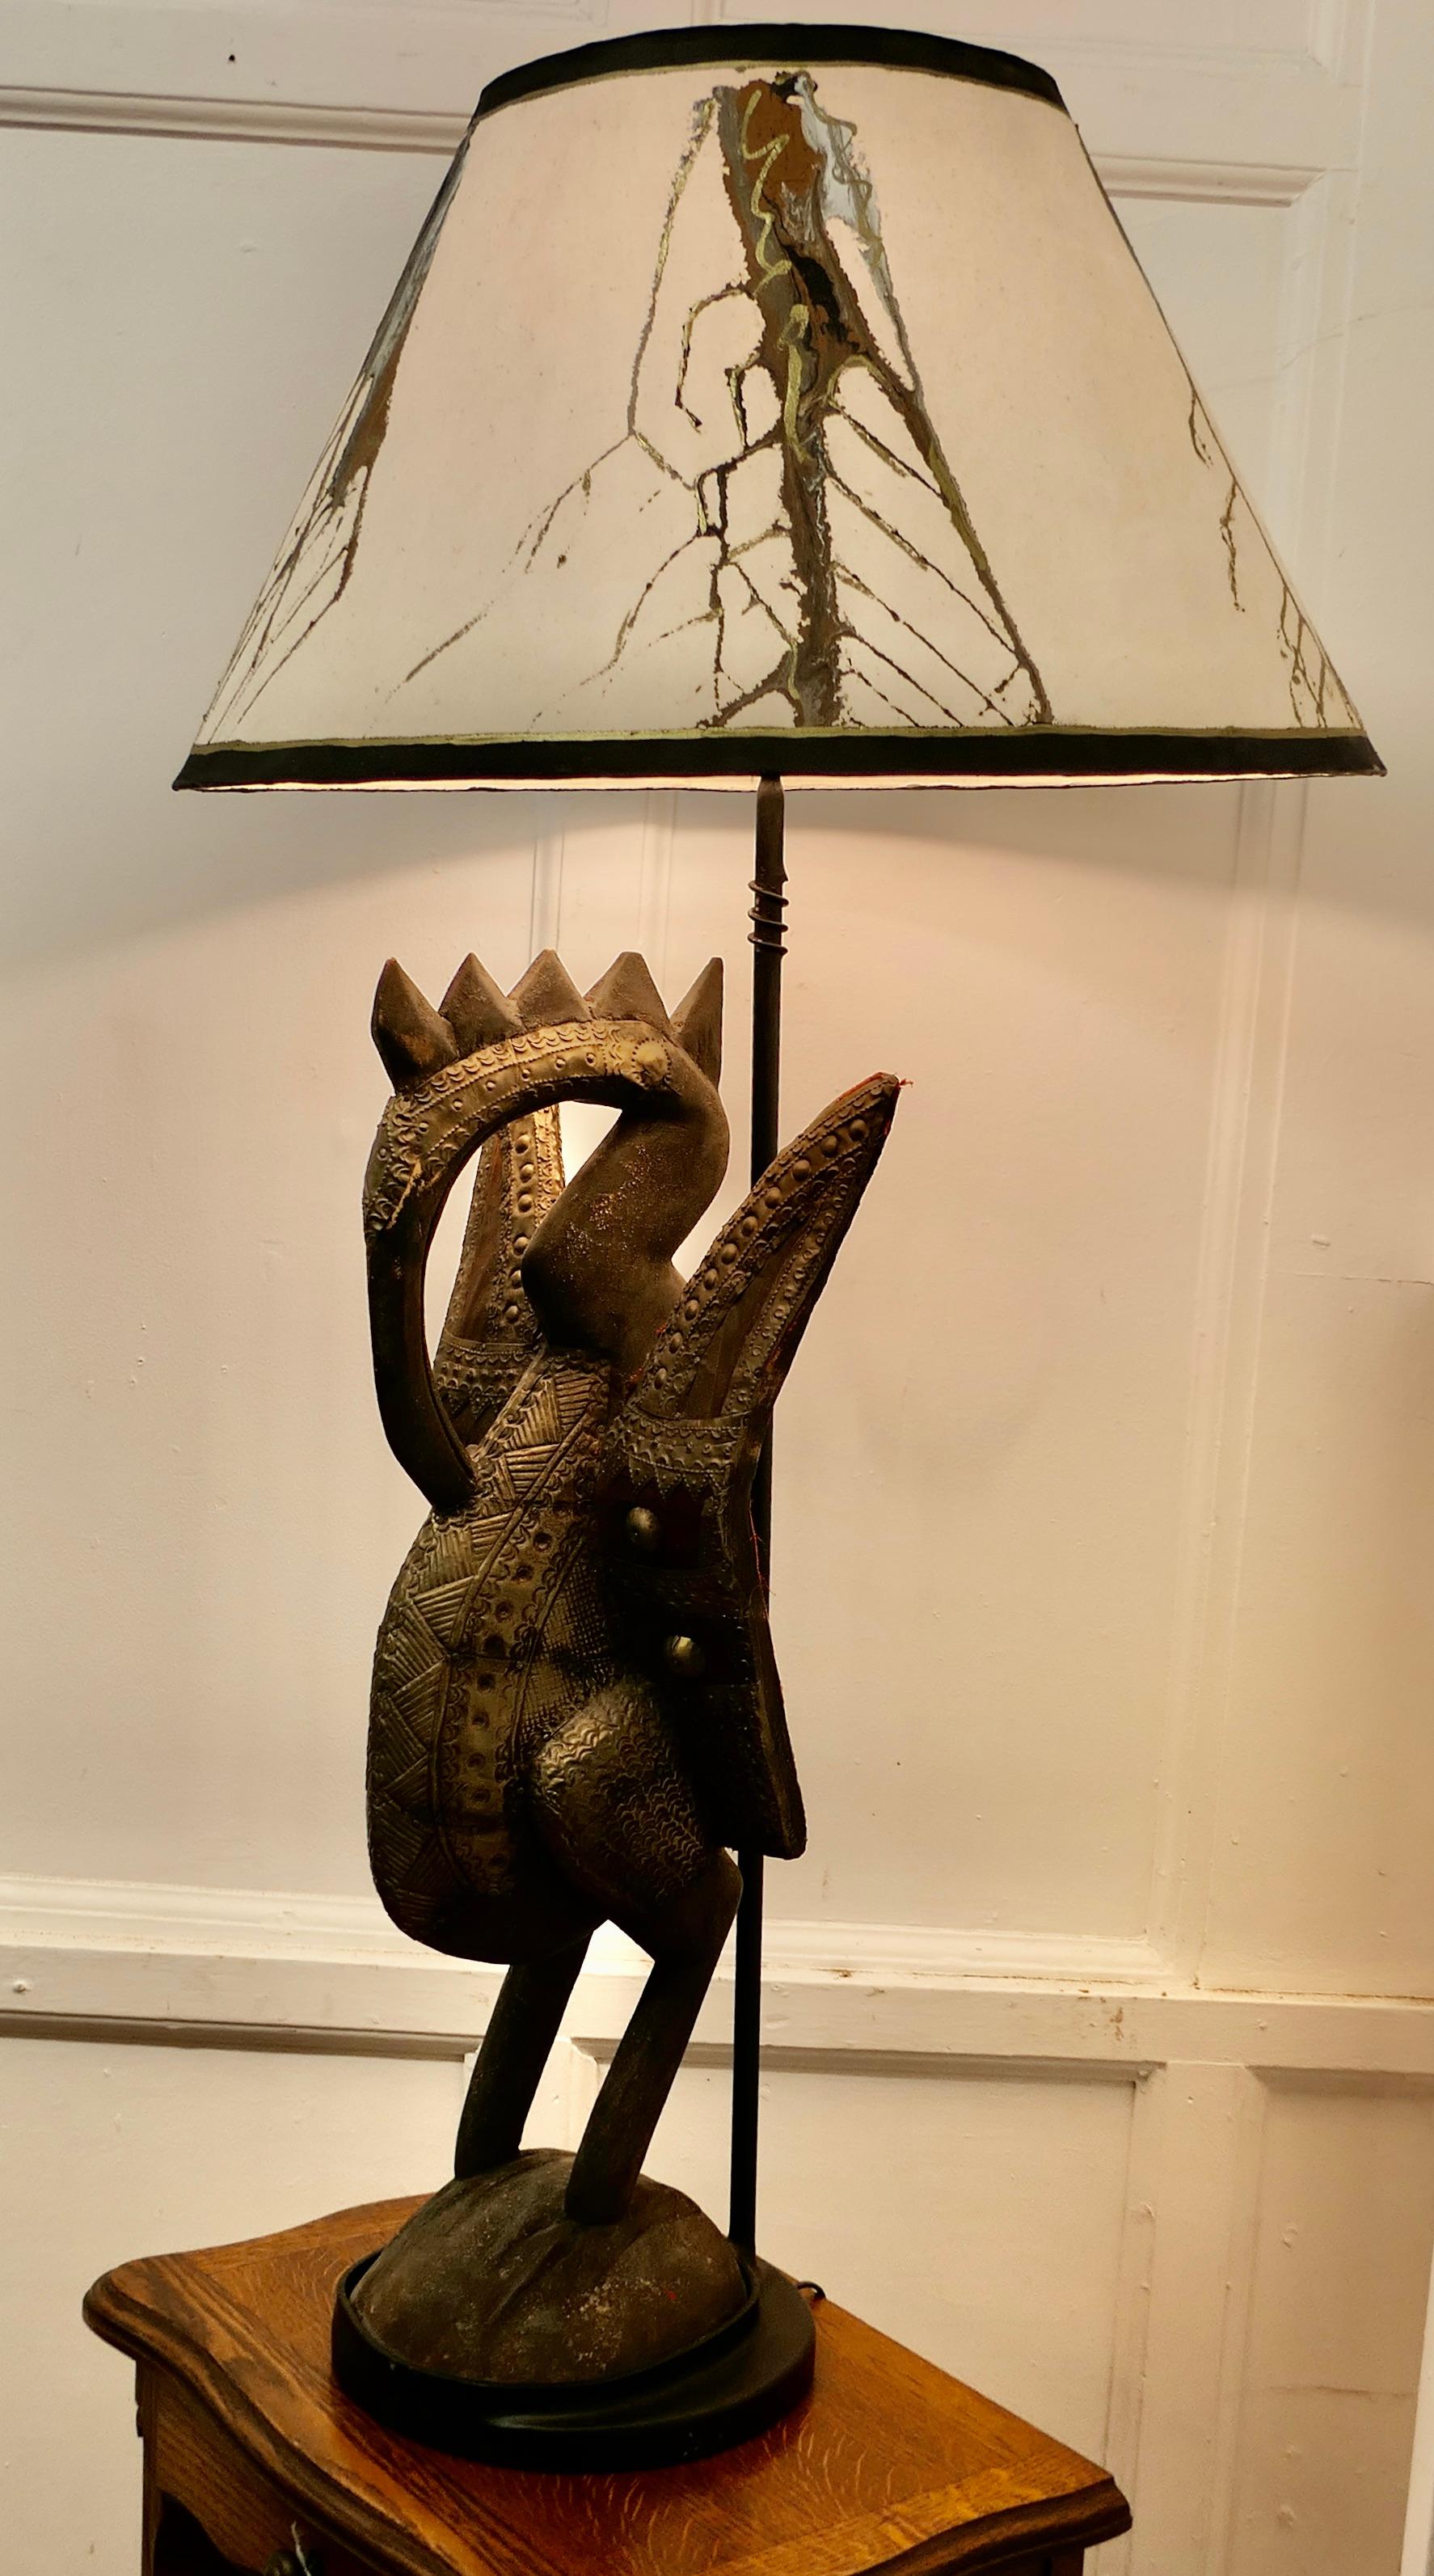 Afrikanische geschnitzte Senufo-Vogel-Skulptur aus Holz, gefasst als hohe Lampe

Diese wunderschöne antike Schnitzerei steht auf einem runden Sockel, der eine Lampe trägt, die sie von oben beleuchtet.
Dies ist eine 